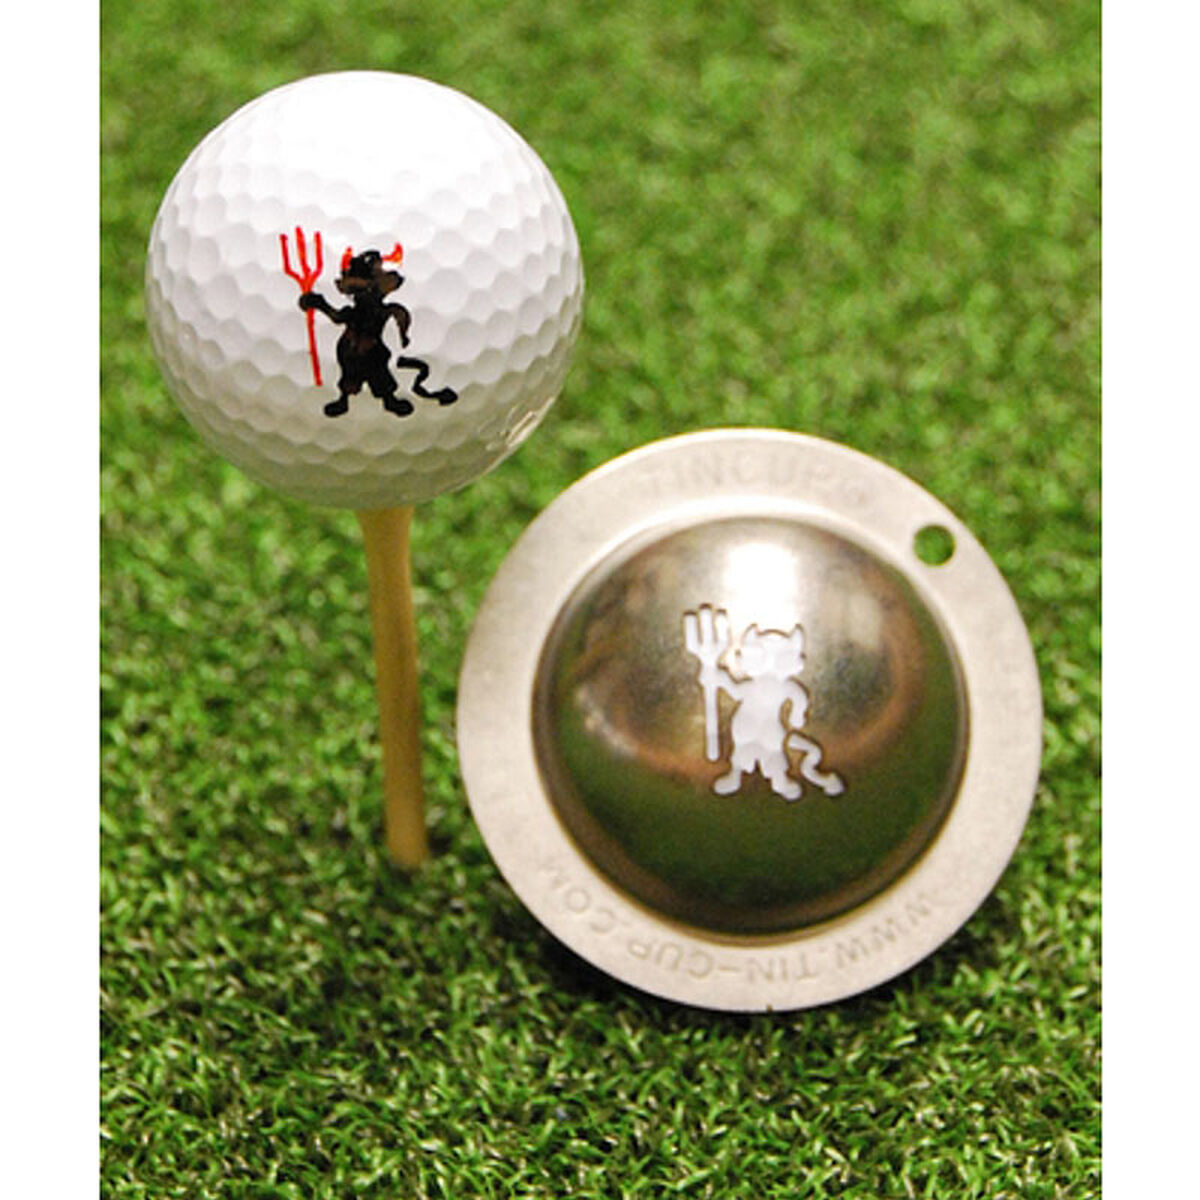 Tin cup. Ball маркер для гольфа. Мяч для гольфа стакан. Мяч гольф Хэллоуин. Бокал гольф.